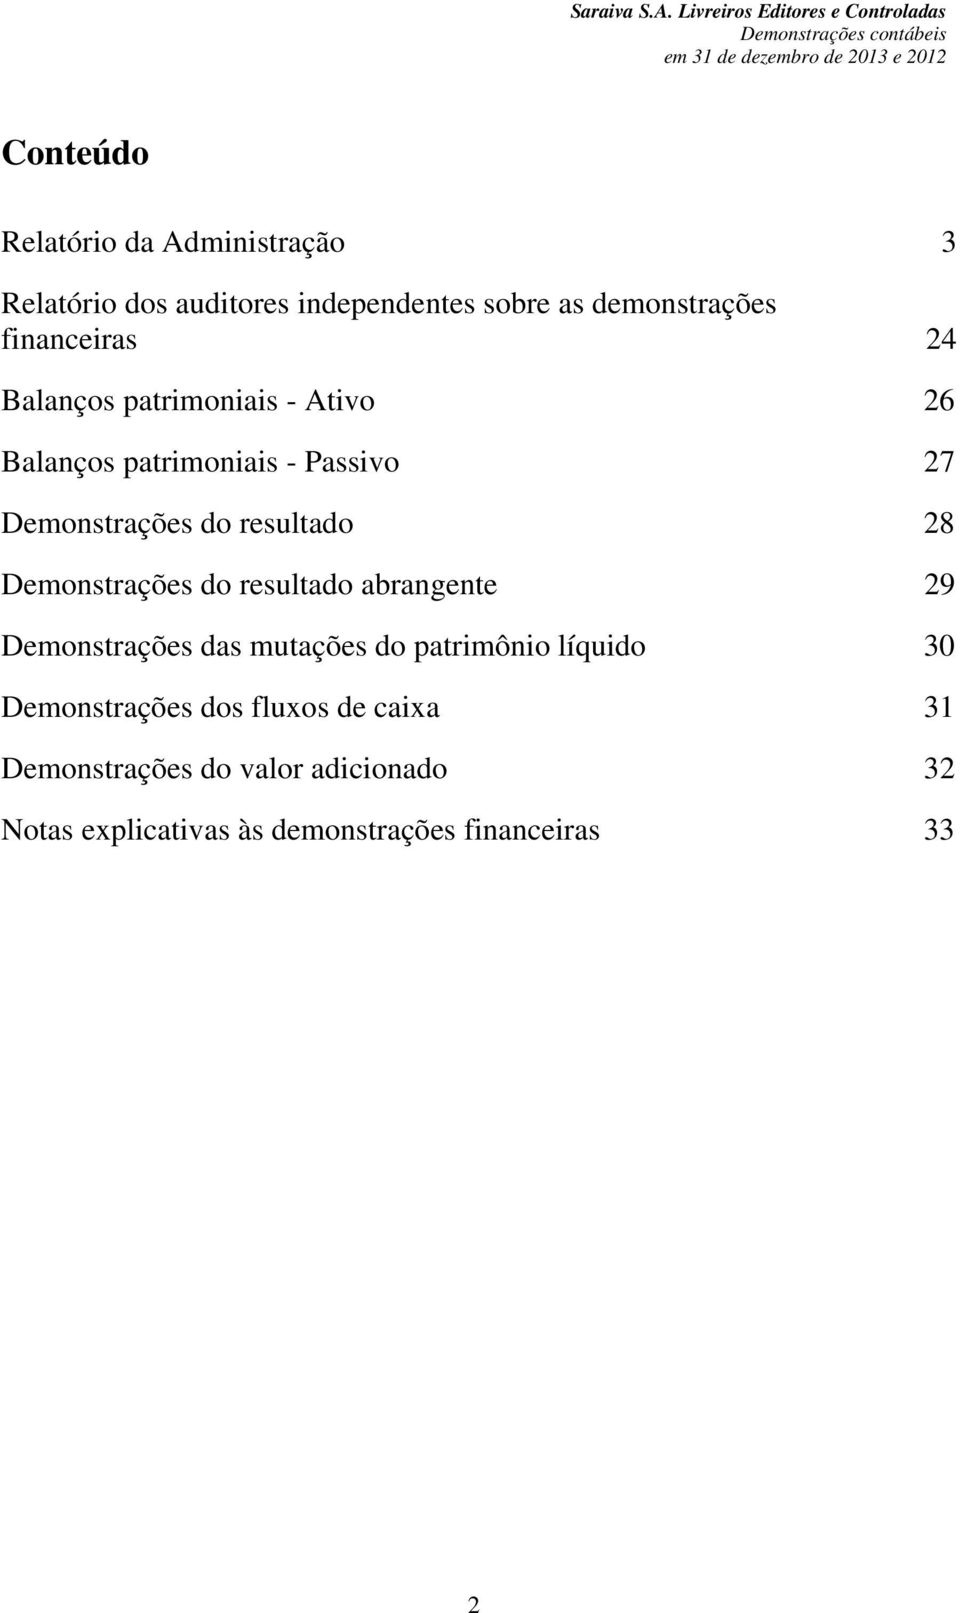 Relatório dos auditores independentes sobre as demonstrações financeiras 24 Balanços patrimoniais - Ativo 26 Balanços patrimoniais -